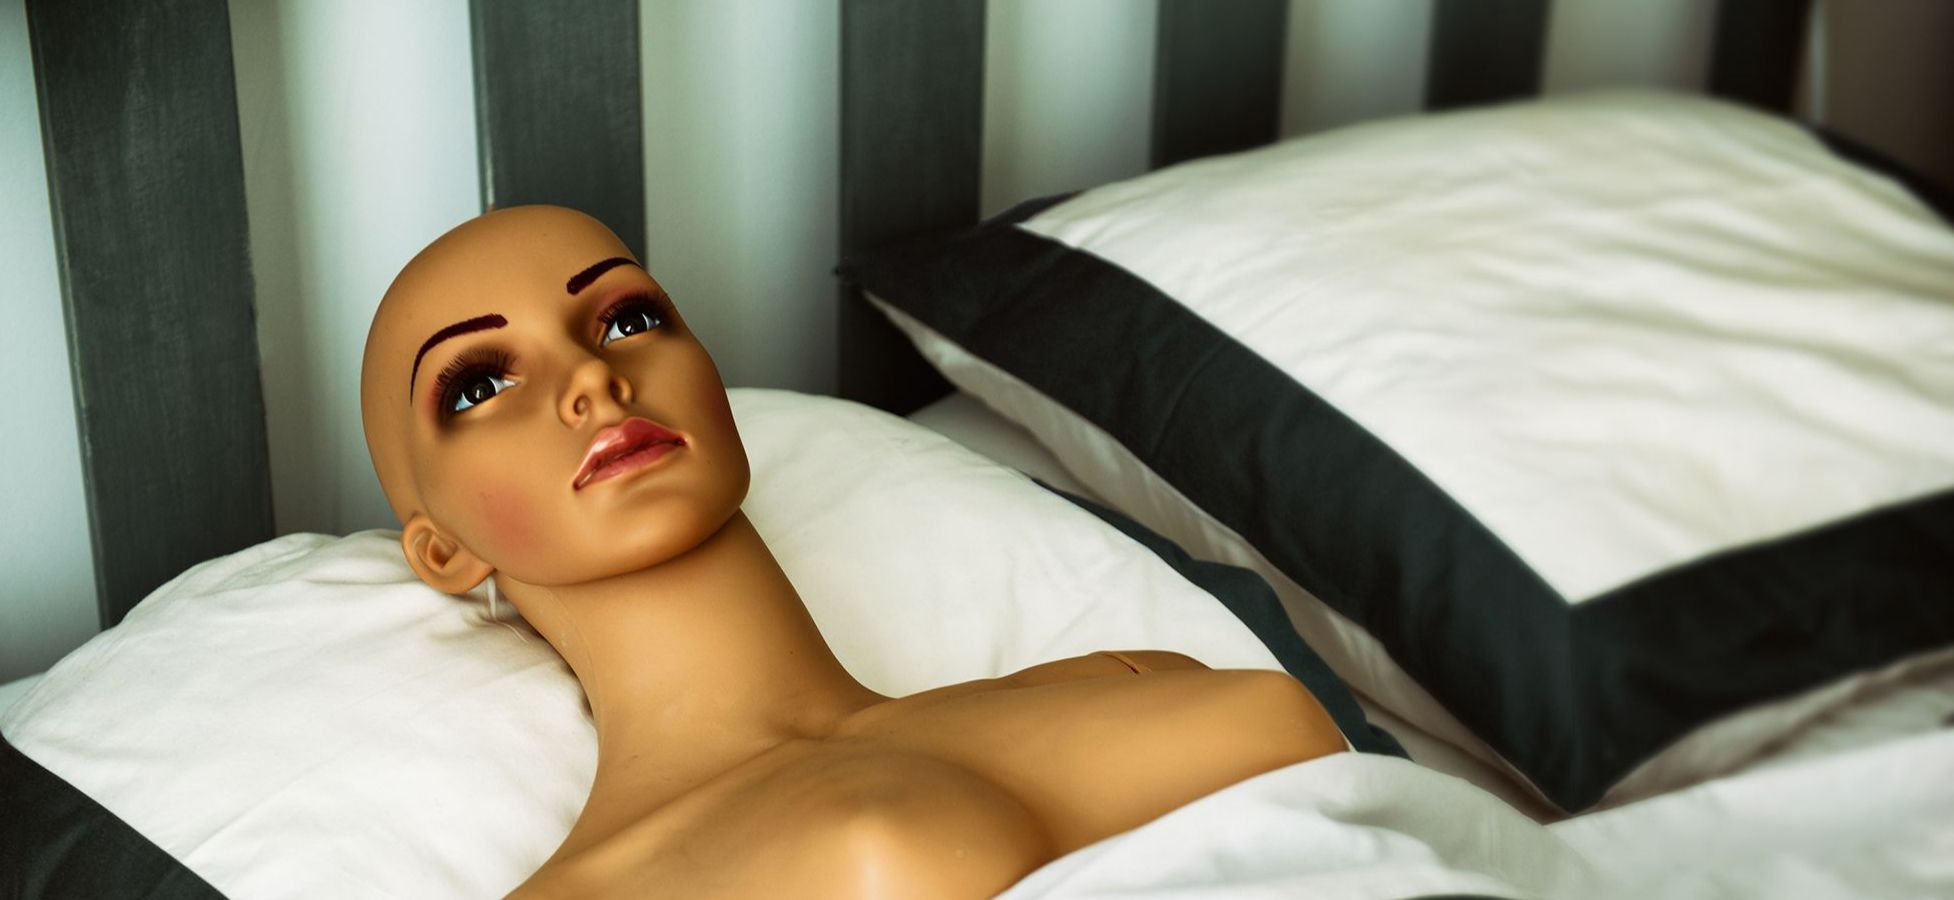 Weiblicher Sex-Roboter liegt in einem Bett